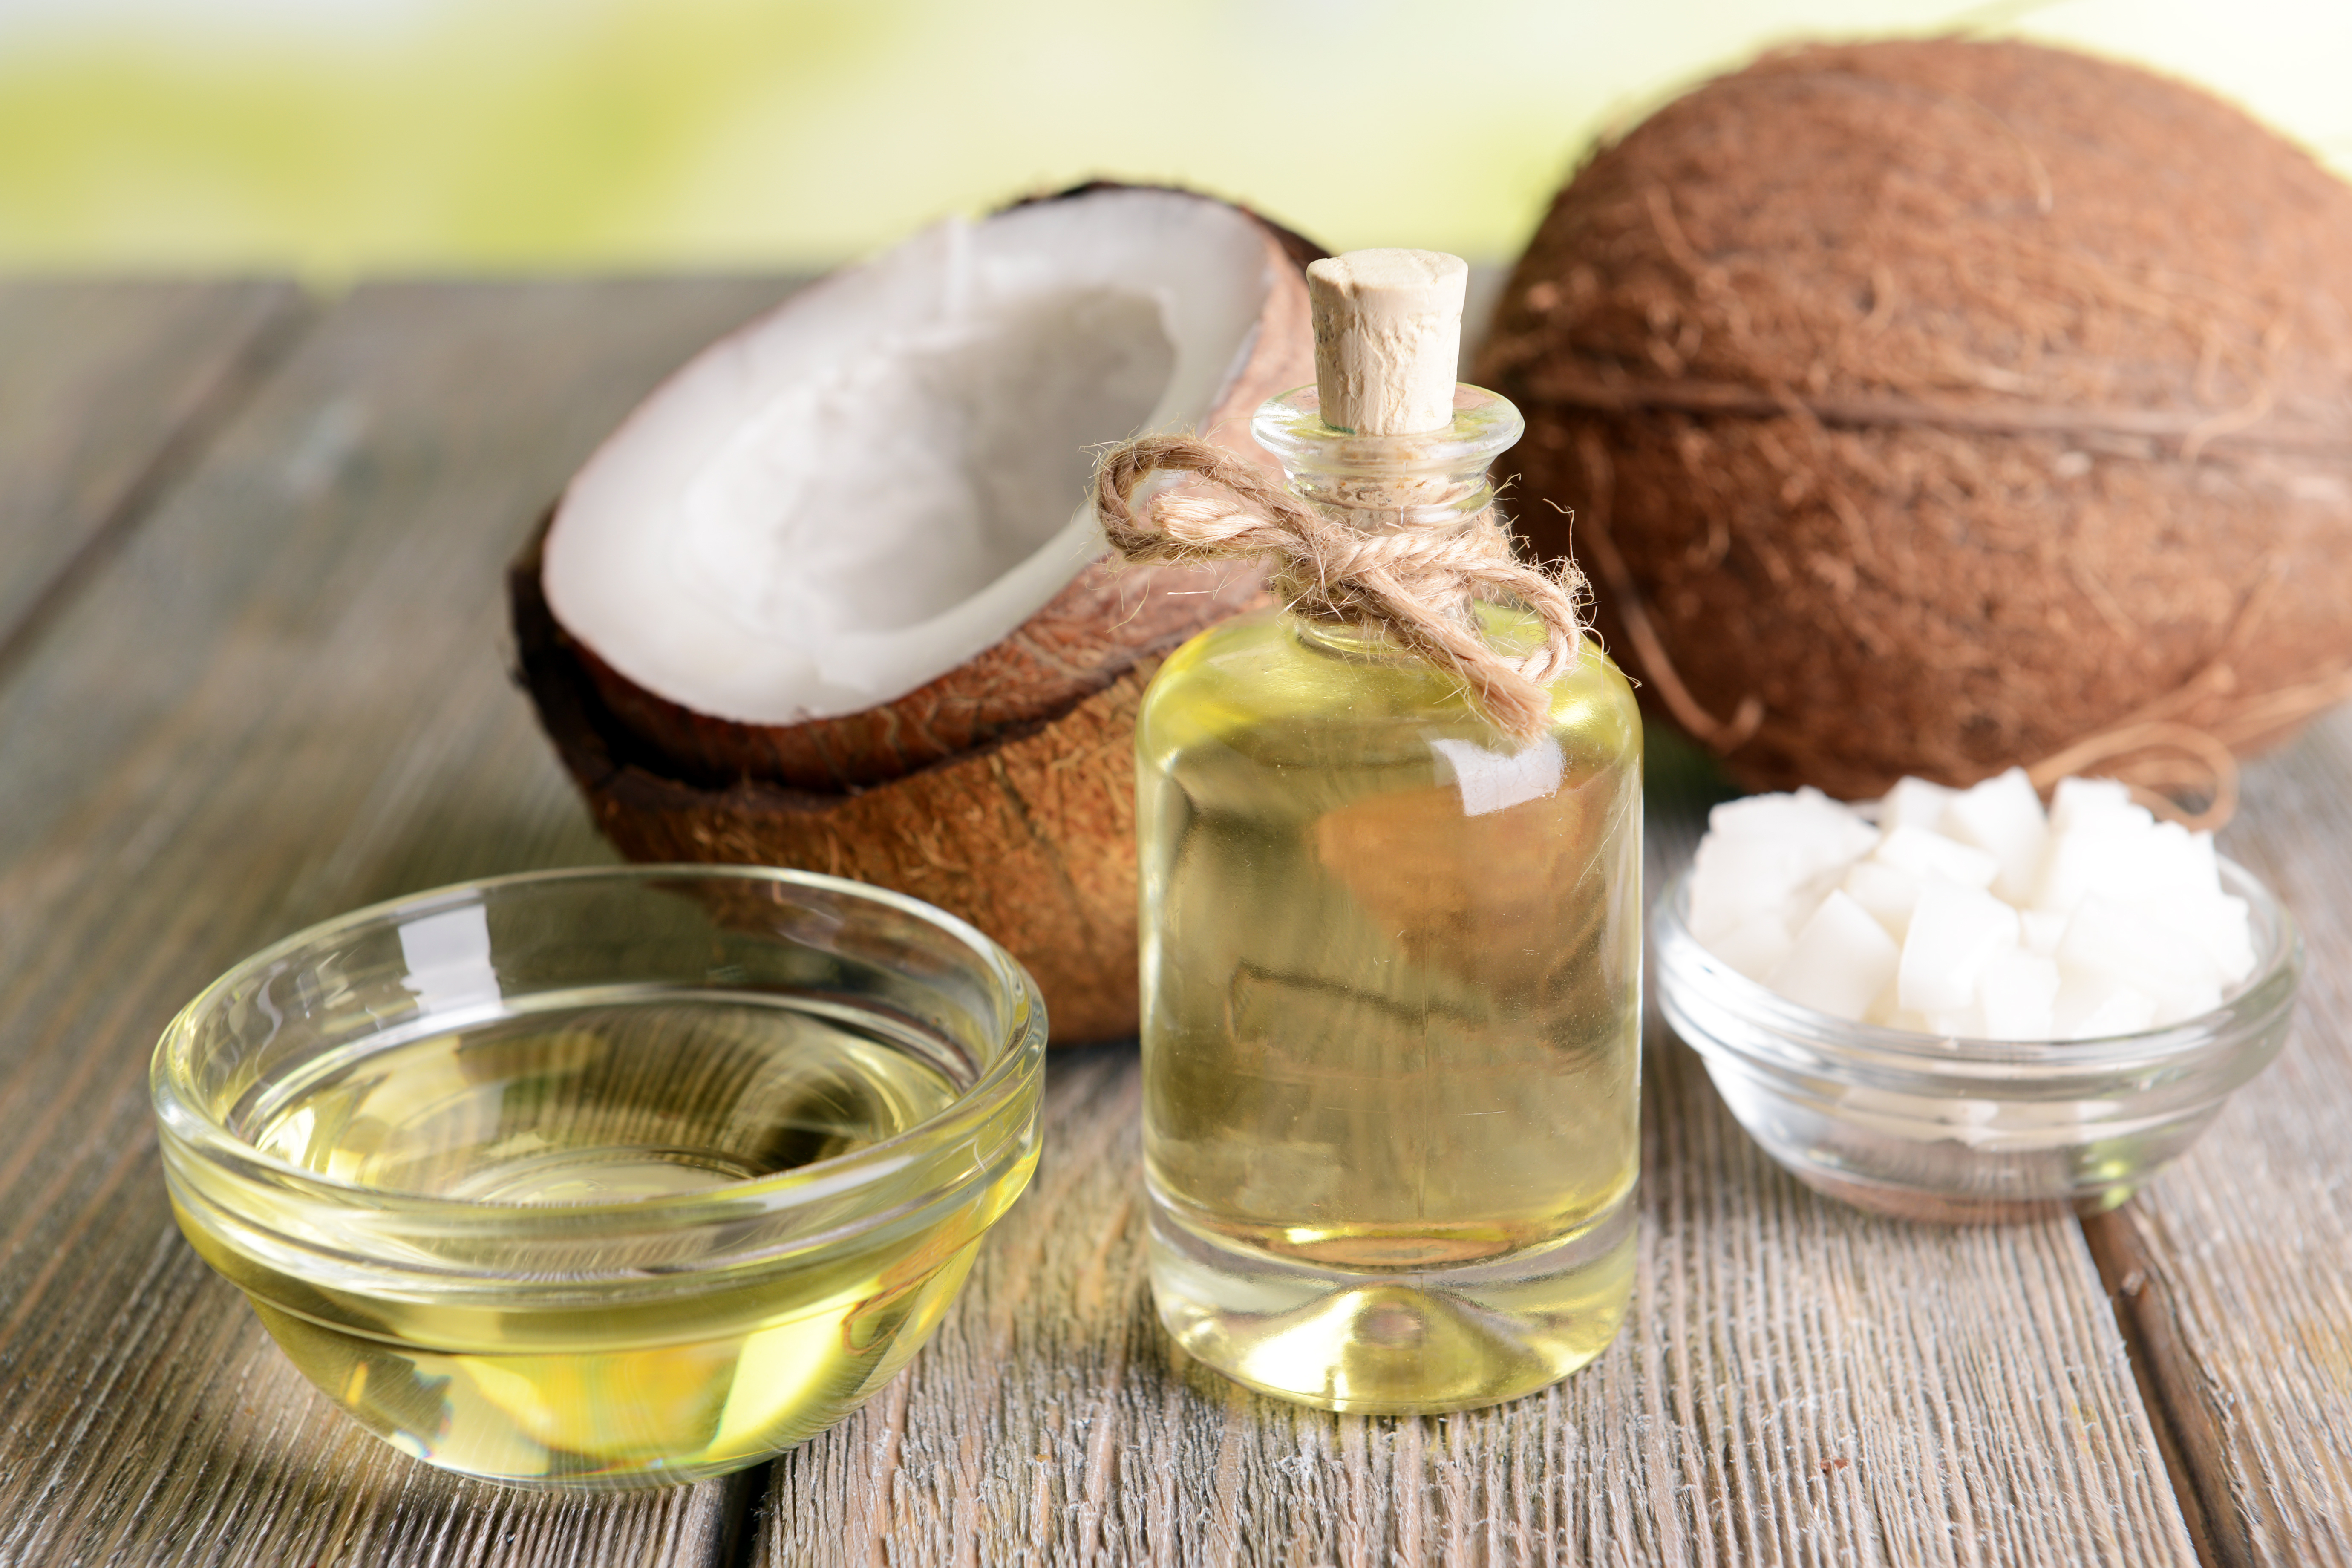 El aceite de coco es una herramienta natural que puede utilizar a su favor, para mejorar el aspecto de su piel, cabello y dientes. (Foto Prensa Libre: Servicios)